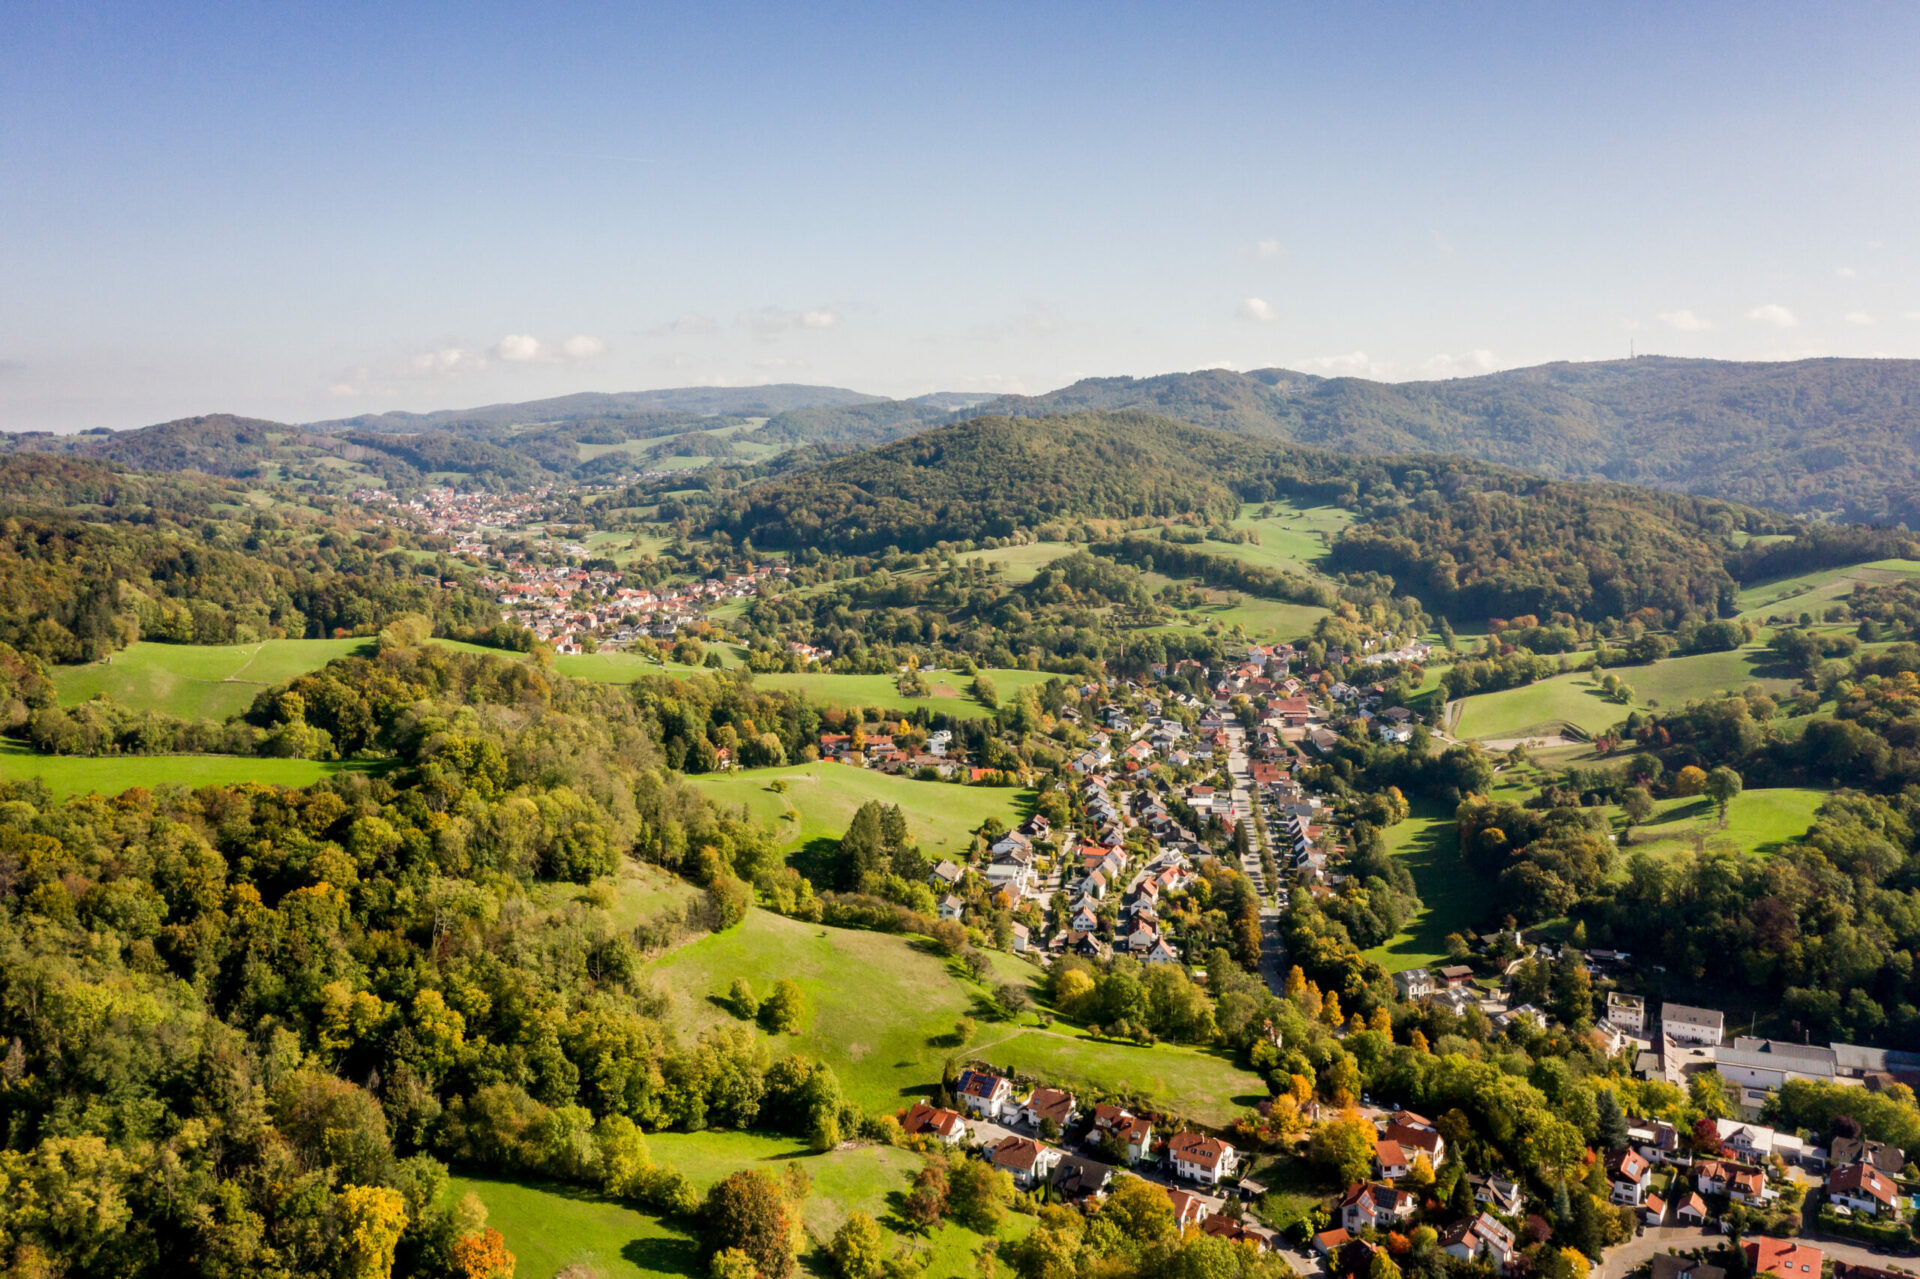 Luftaufnahme einer üppigen, grünen Landschaft mit der Kleinstadt Bensheim mit gruppierten Häusern, umgeben von sanften Hügeln und Wäldern unter einem klaren Himmel.